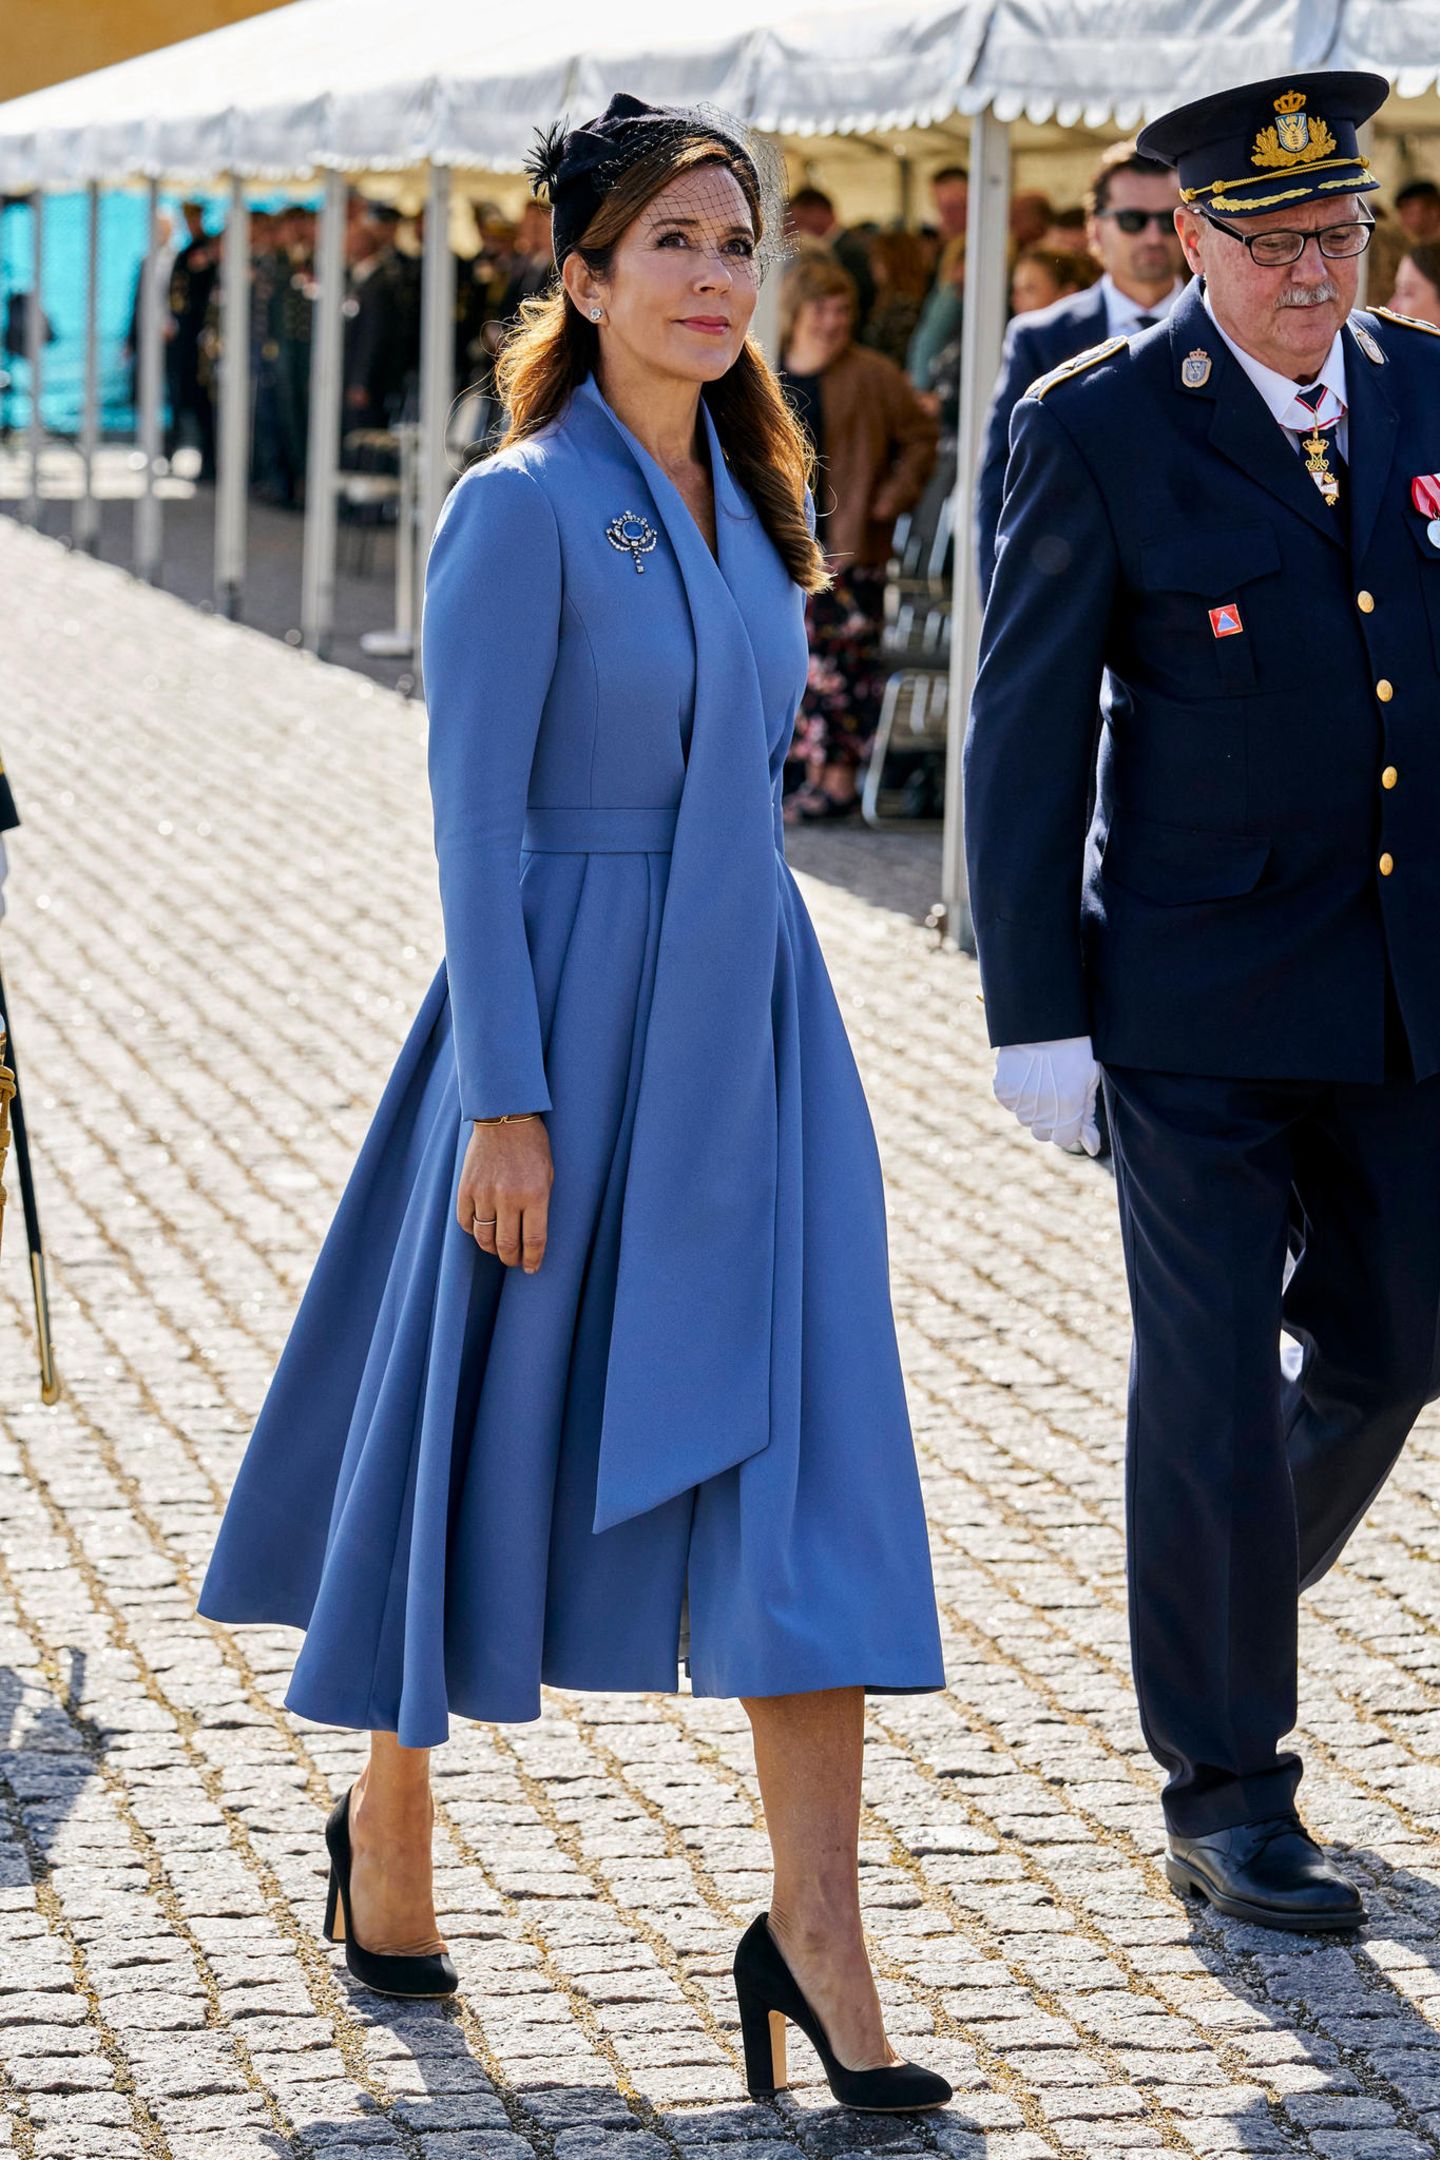 Formelles Event, formeller Style: Beim Dänischen Flaggentag zeigt sich Prinzessin Mary in einem eleganten fliederfarbenen Blazerkleid, dazu kombiniert sie schwarze Accessoires wie Pumps, Clutch, Hut und Handschuhe.